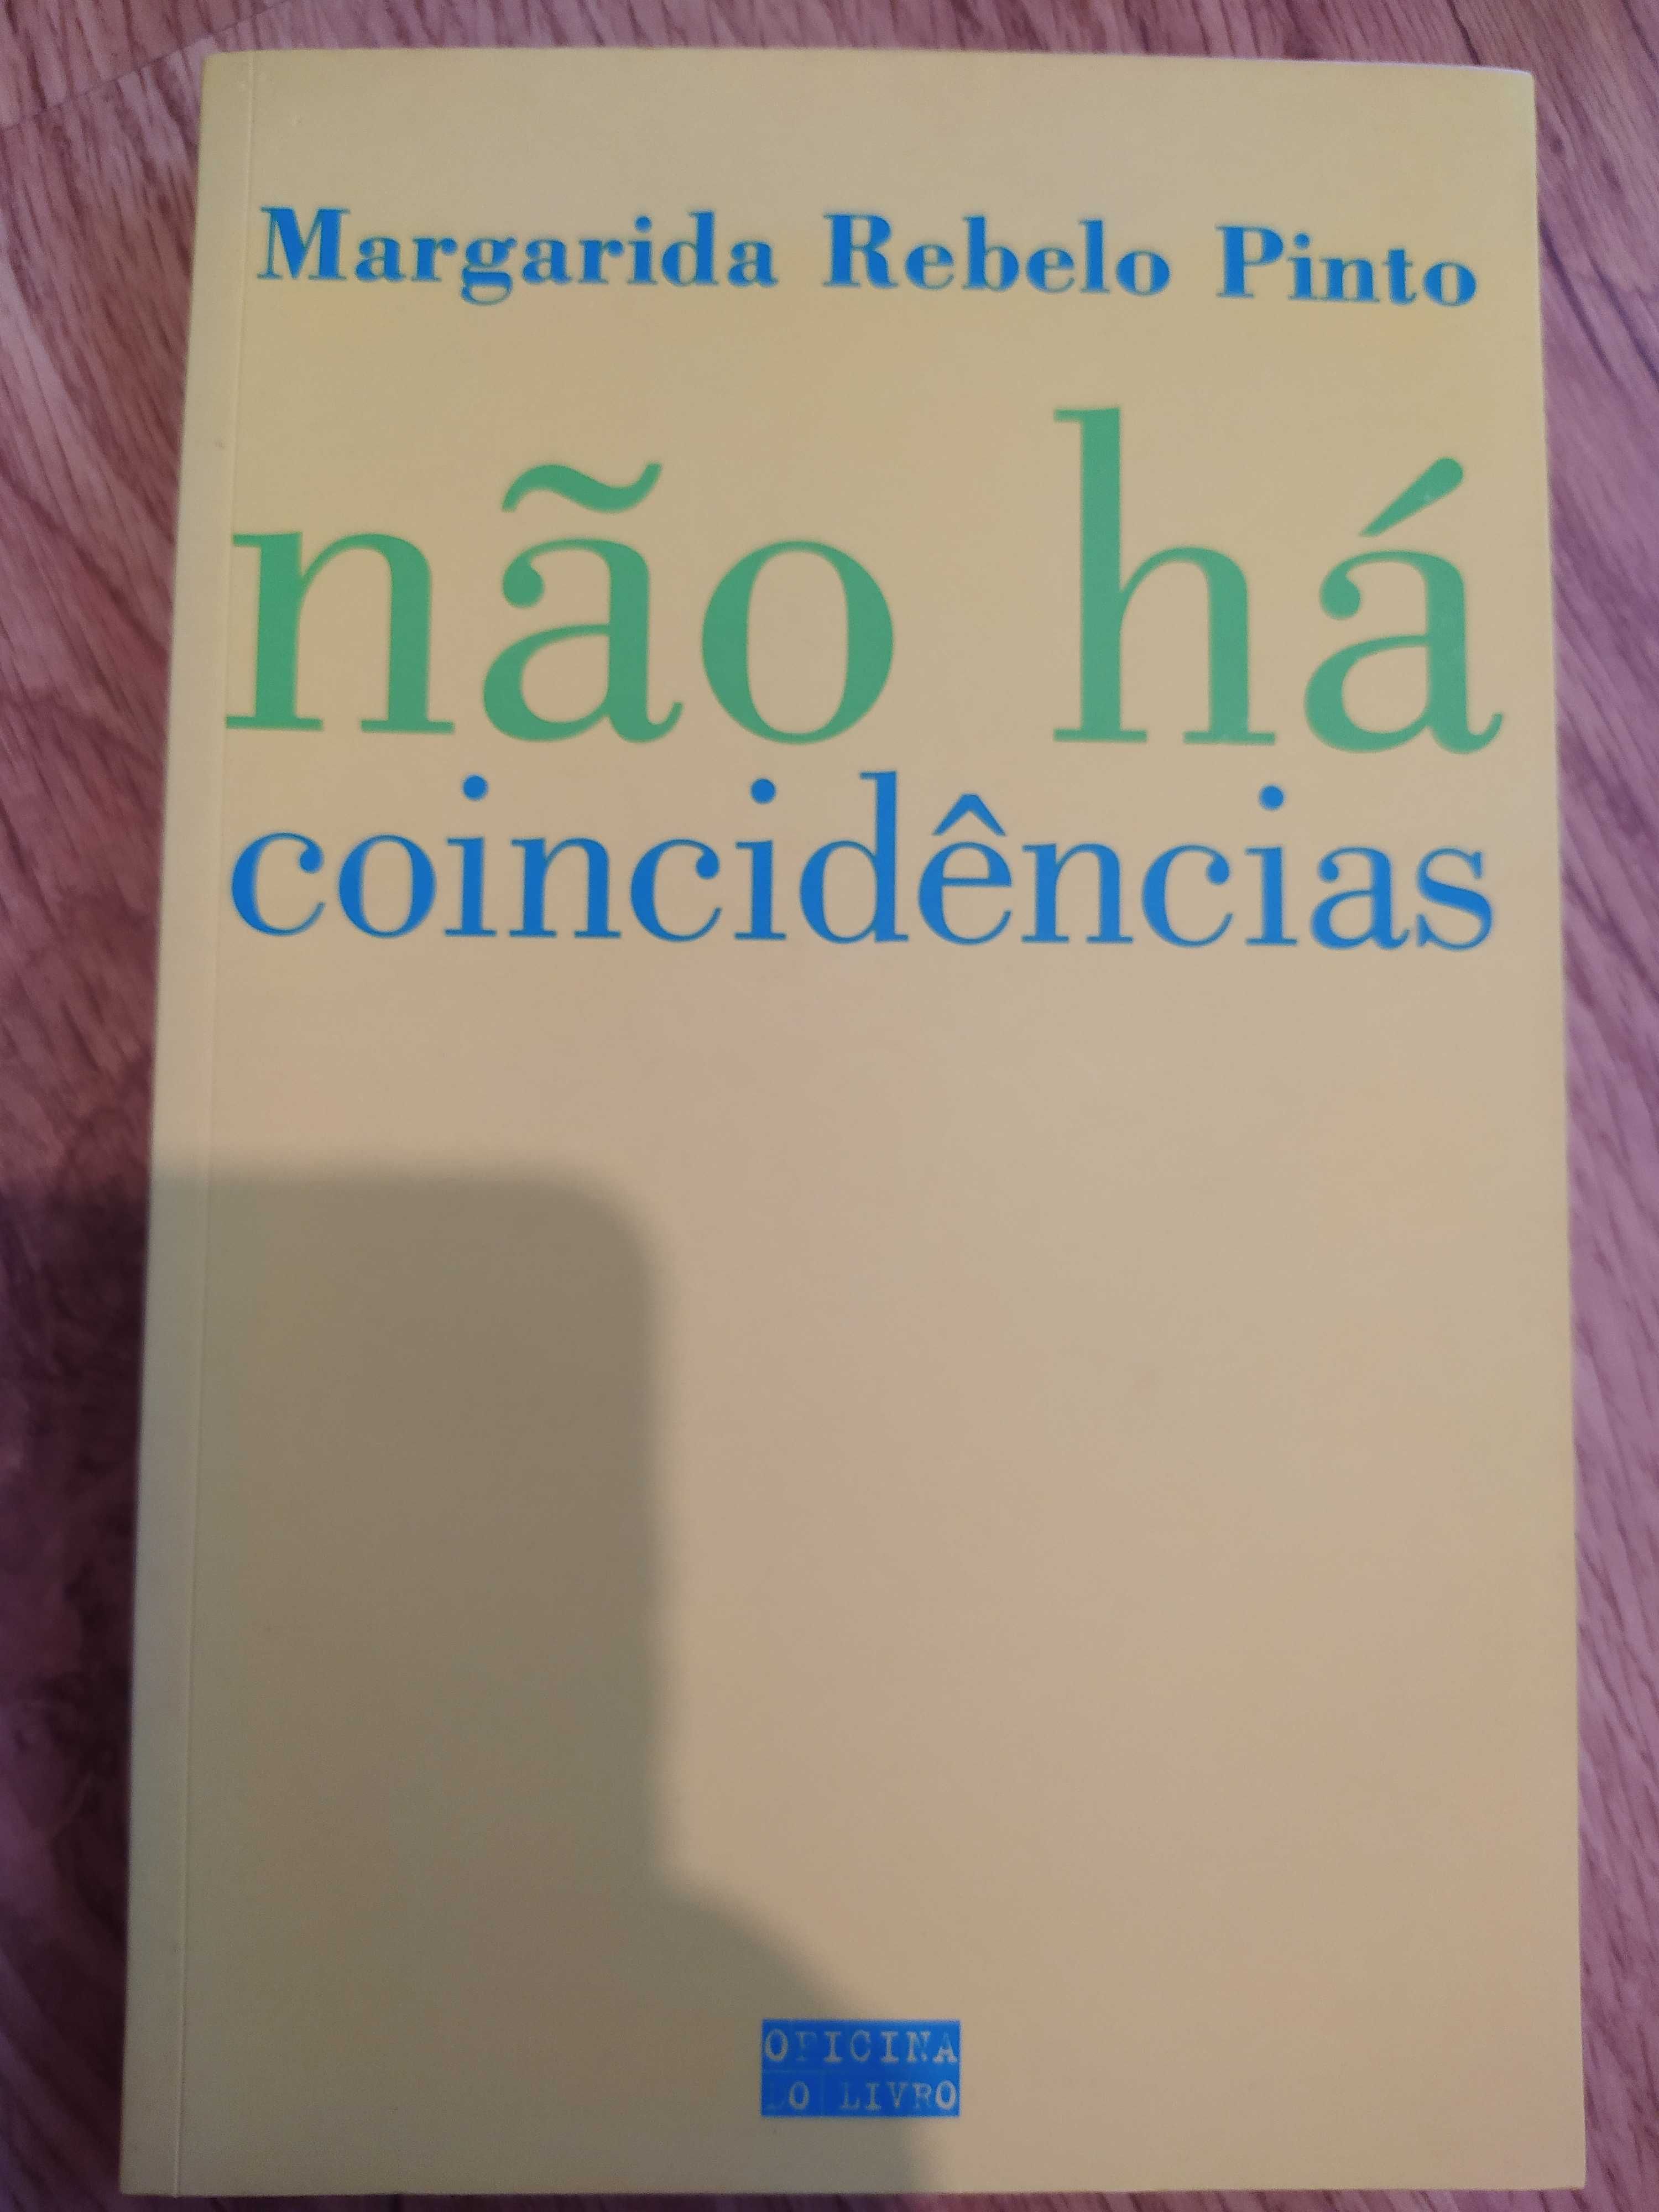 Vários livros - 5€ cada - Paulo Coelho/Margarida Rebelo Pinto